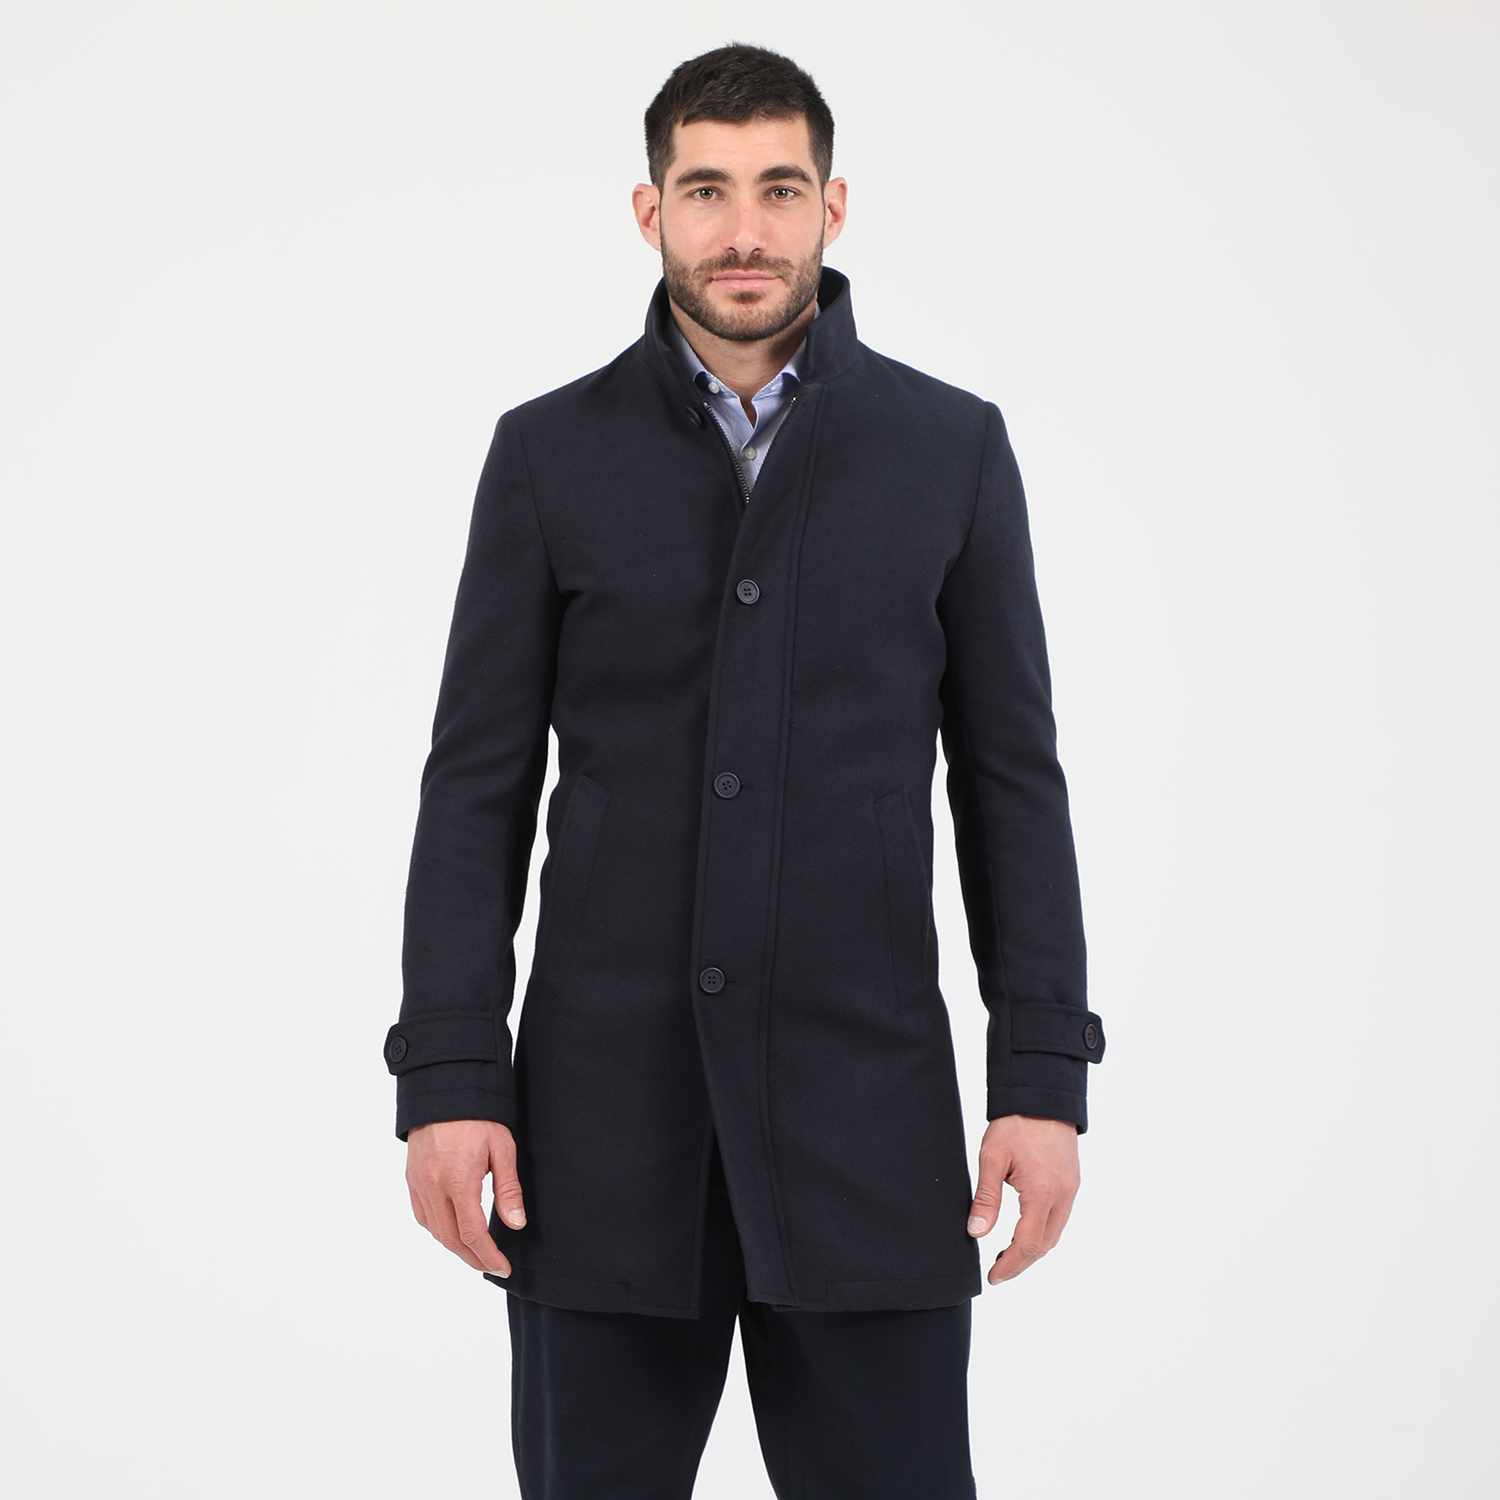 Ανδρικά/Ρούχα/Πανωφόρια/Παλτό MARTIN & CO - Ανδρικό παλτό MARTIN & CO SLIM COAT μπλε